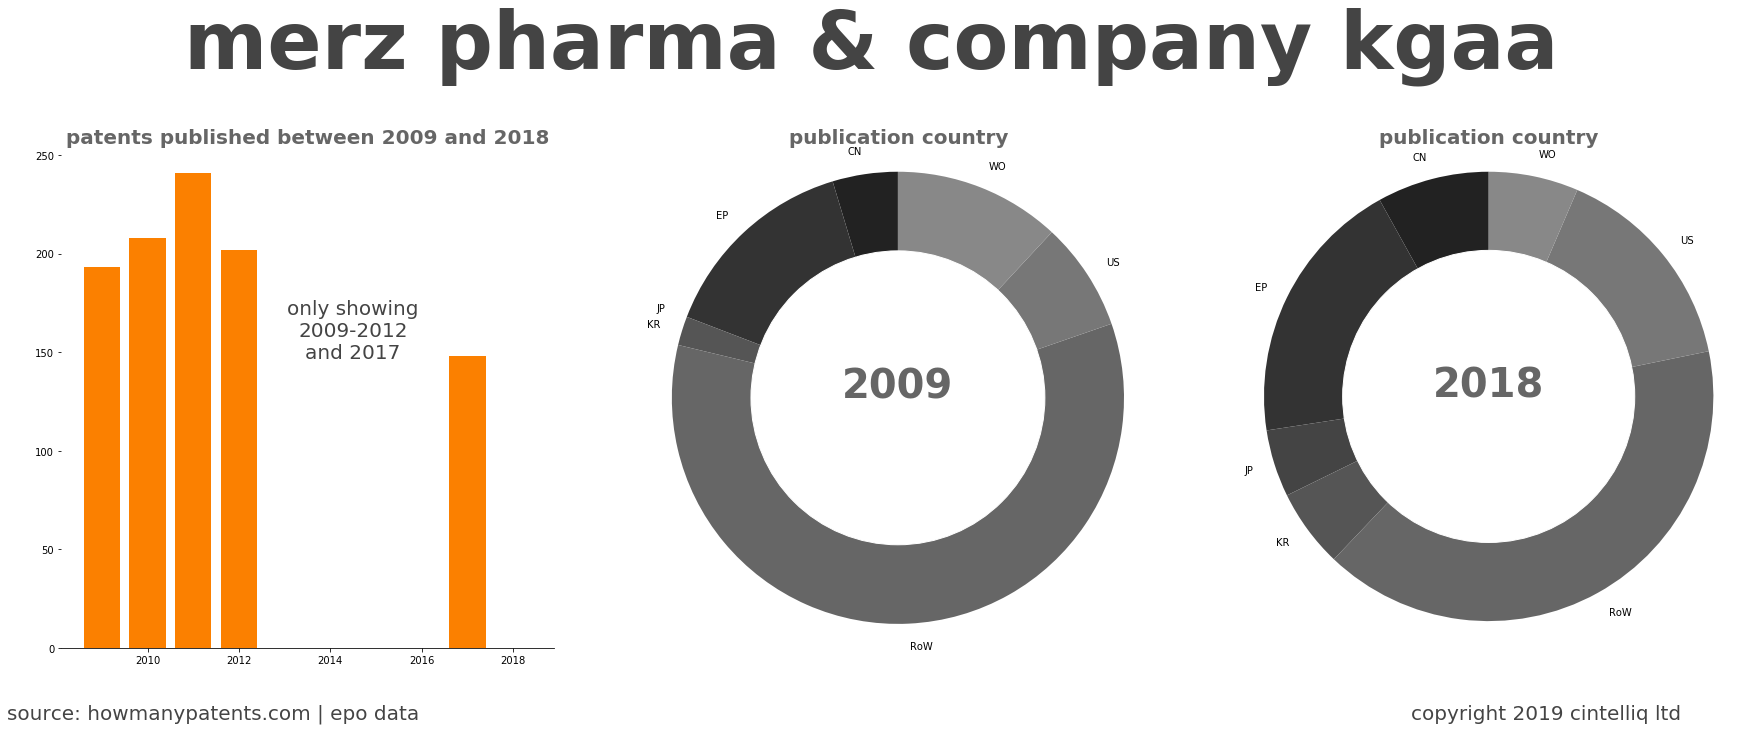 summary of patents for Merz Pharma & Company Kgaa